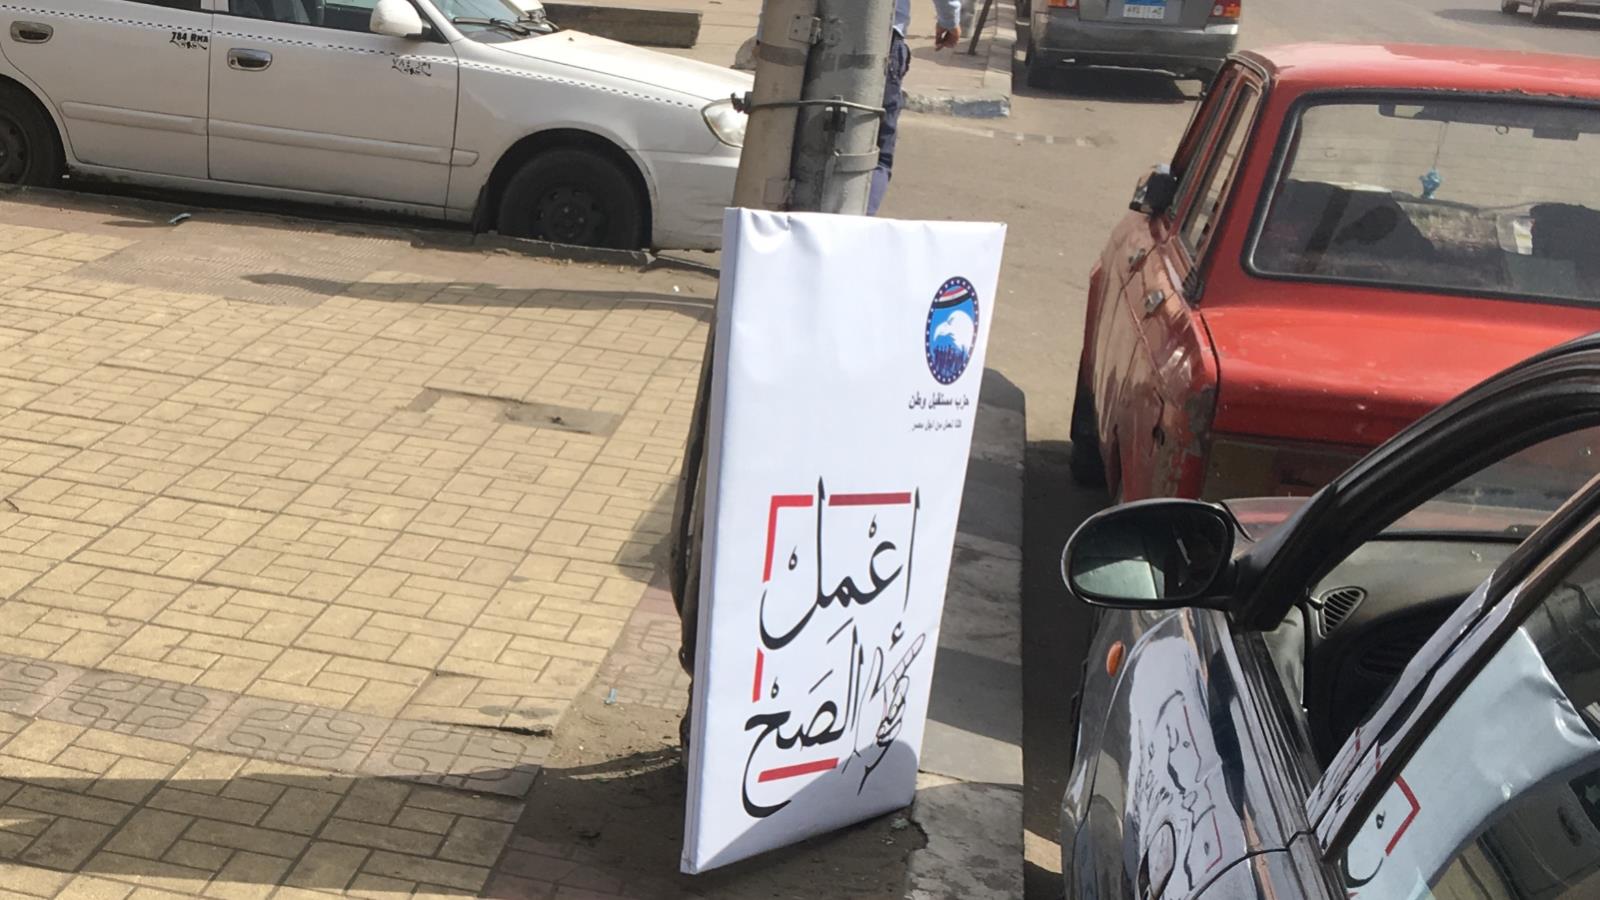 أسقط مجهولون لافتات في شوارع القاهرة تدعو المصريين للتصويت بنعم على التعديلات الدستورية (الجزيرة)